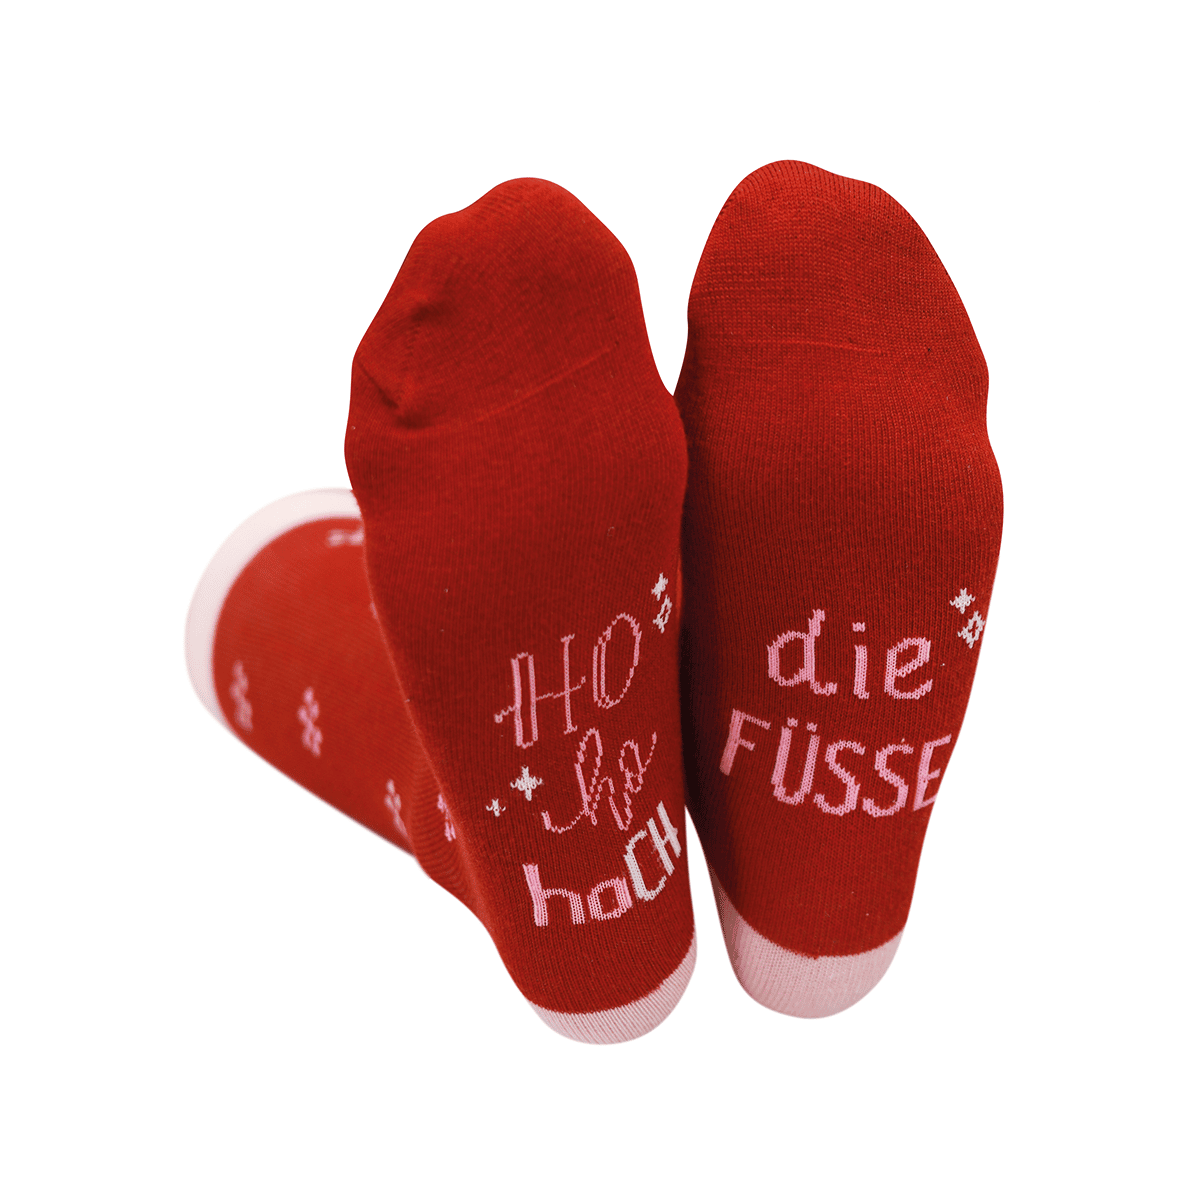 Coole Socke – Weihnachtssocken verschiedene Designs (Damen)